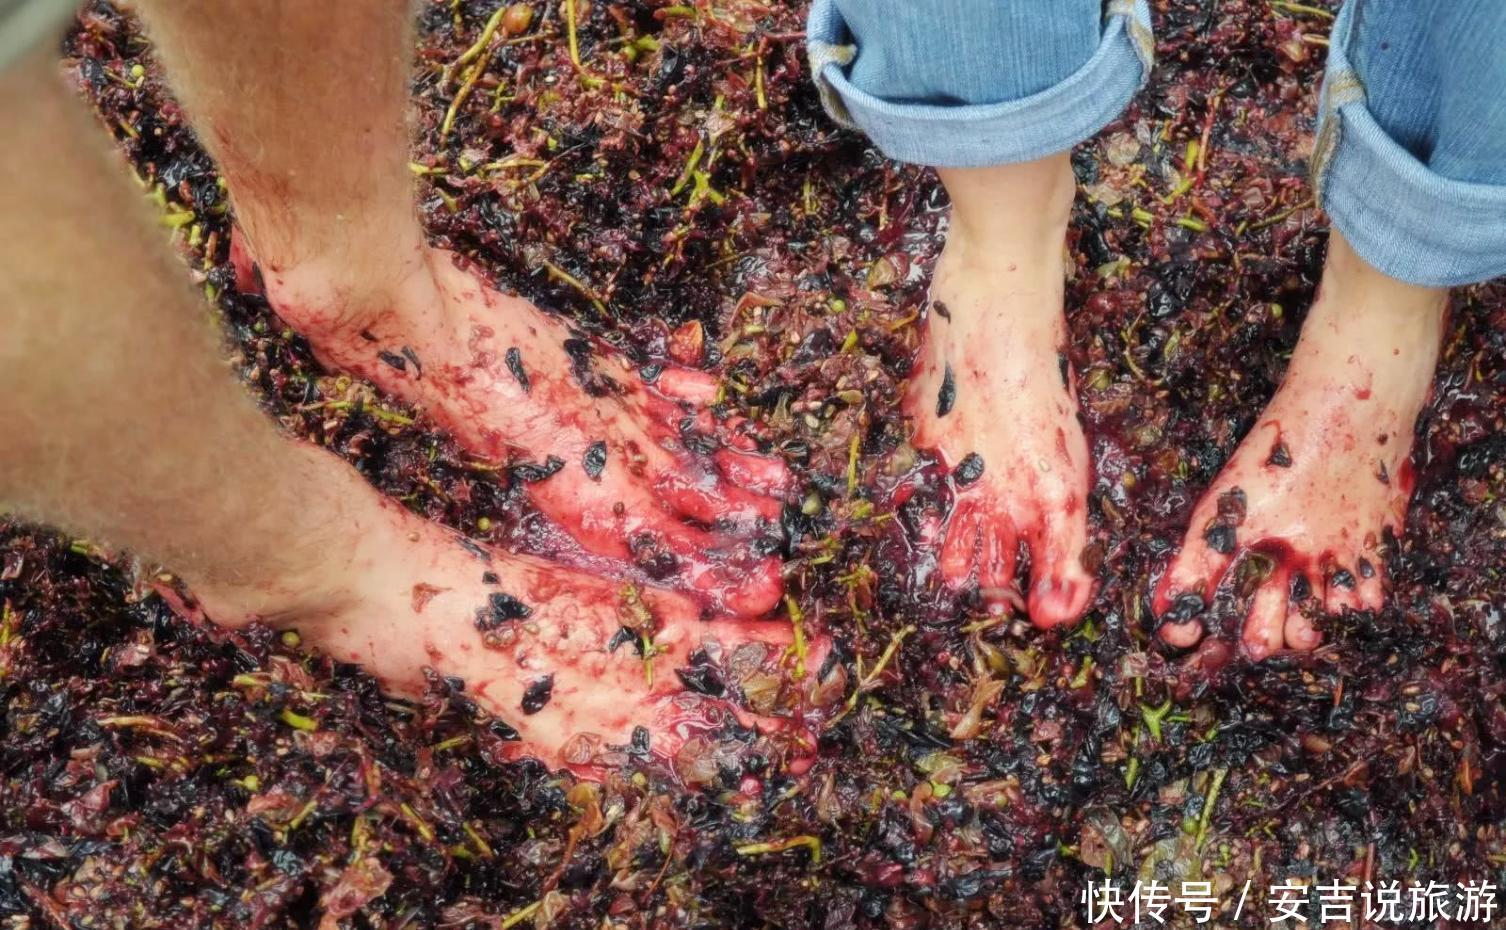 世界上最顶级的葡萄酒, 都是少女赤脚踩出来的